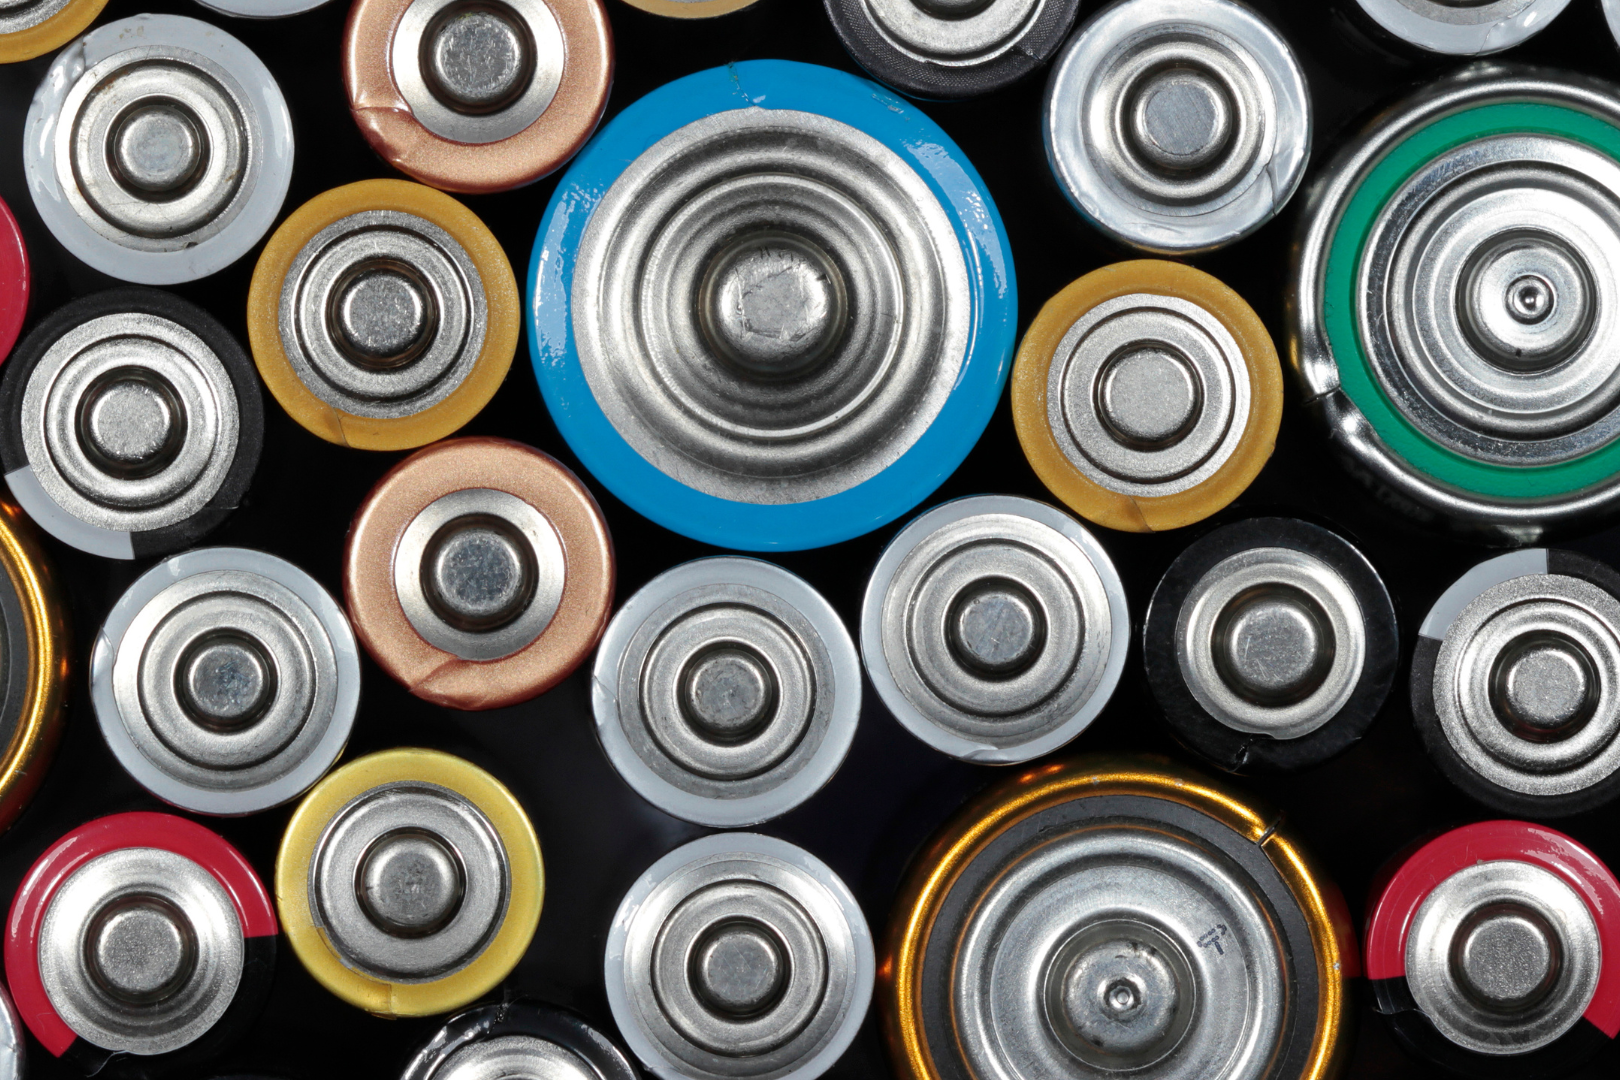 różnej wielkości baterie - elektroodpady, które podlegają obowiązkowi recyklingu